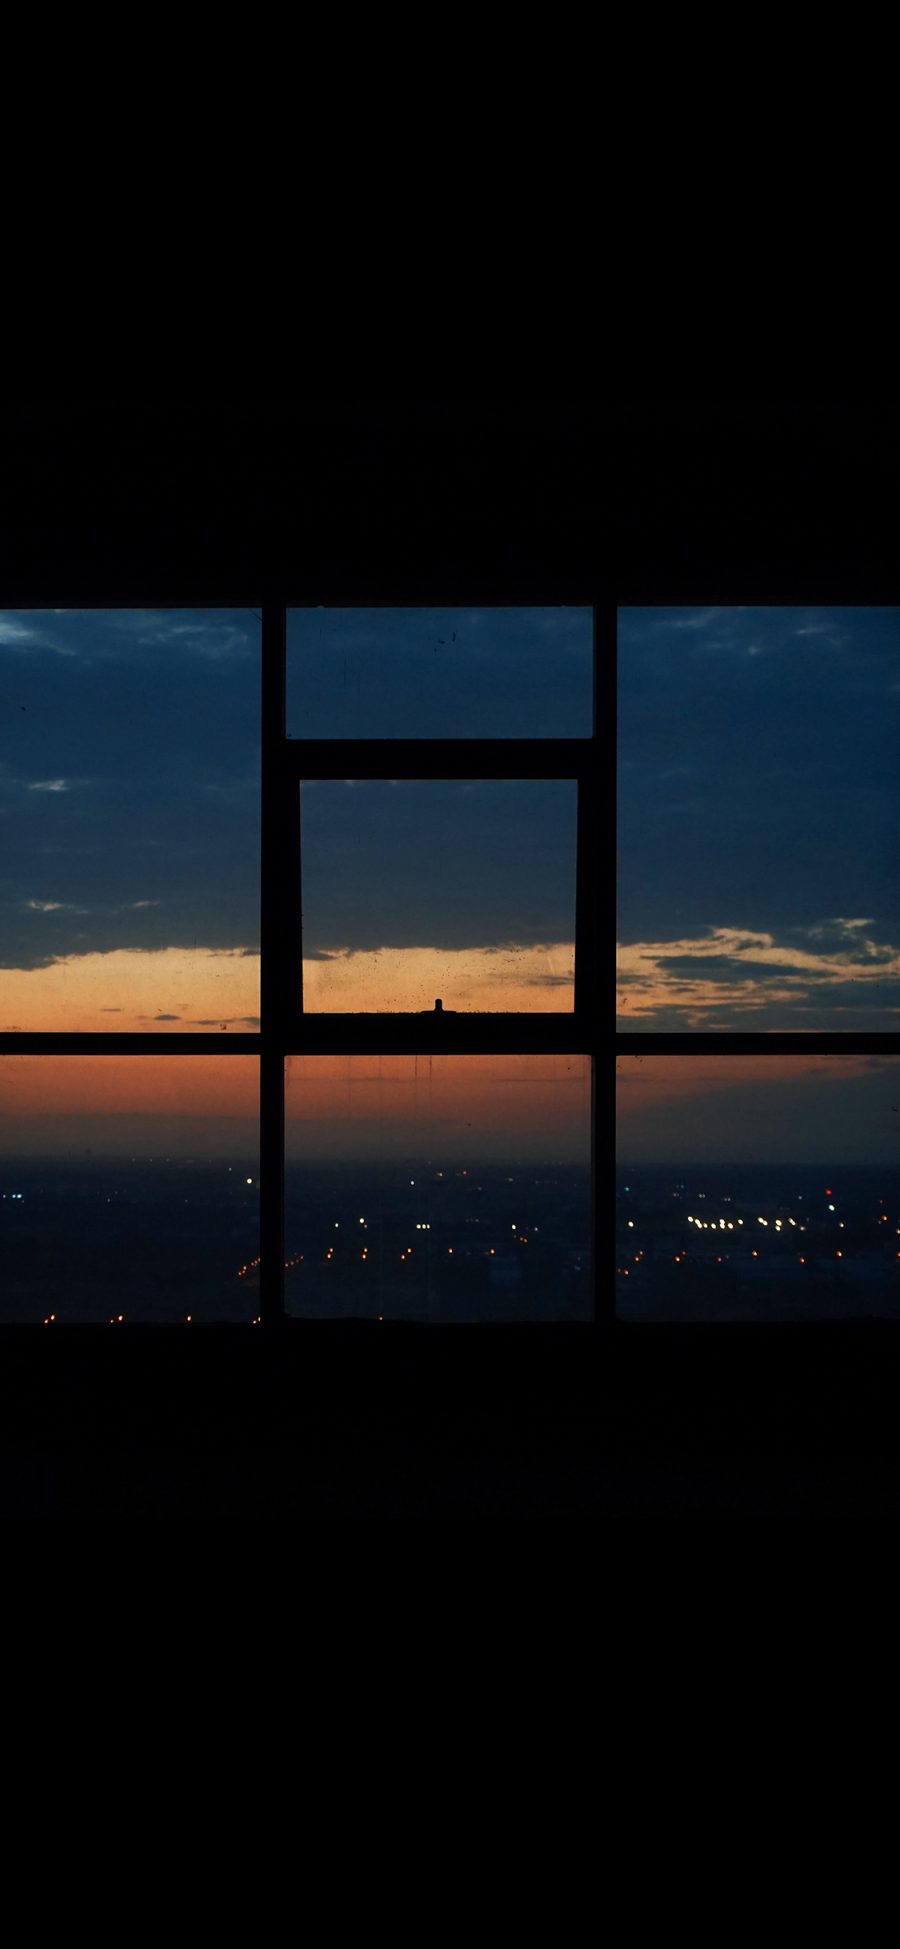 [2436×1125]窗户 凌晨 美景 宁静 苹果手机壁纸图片